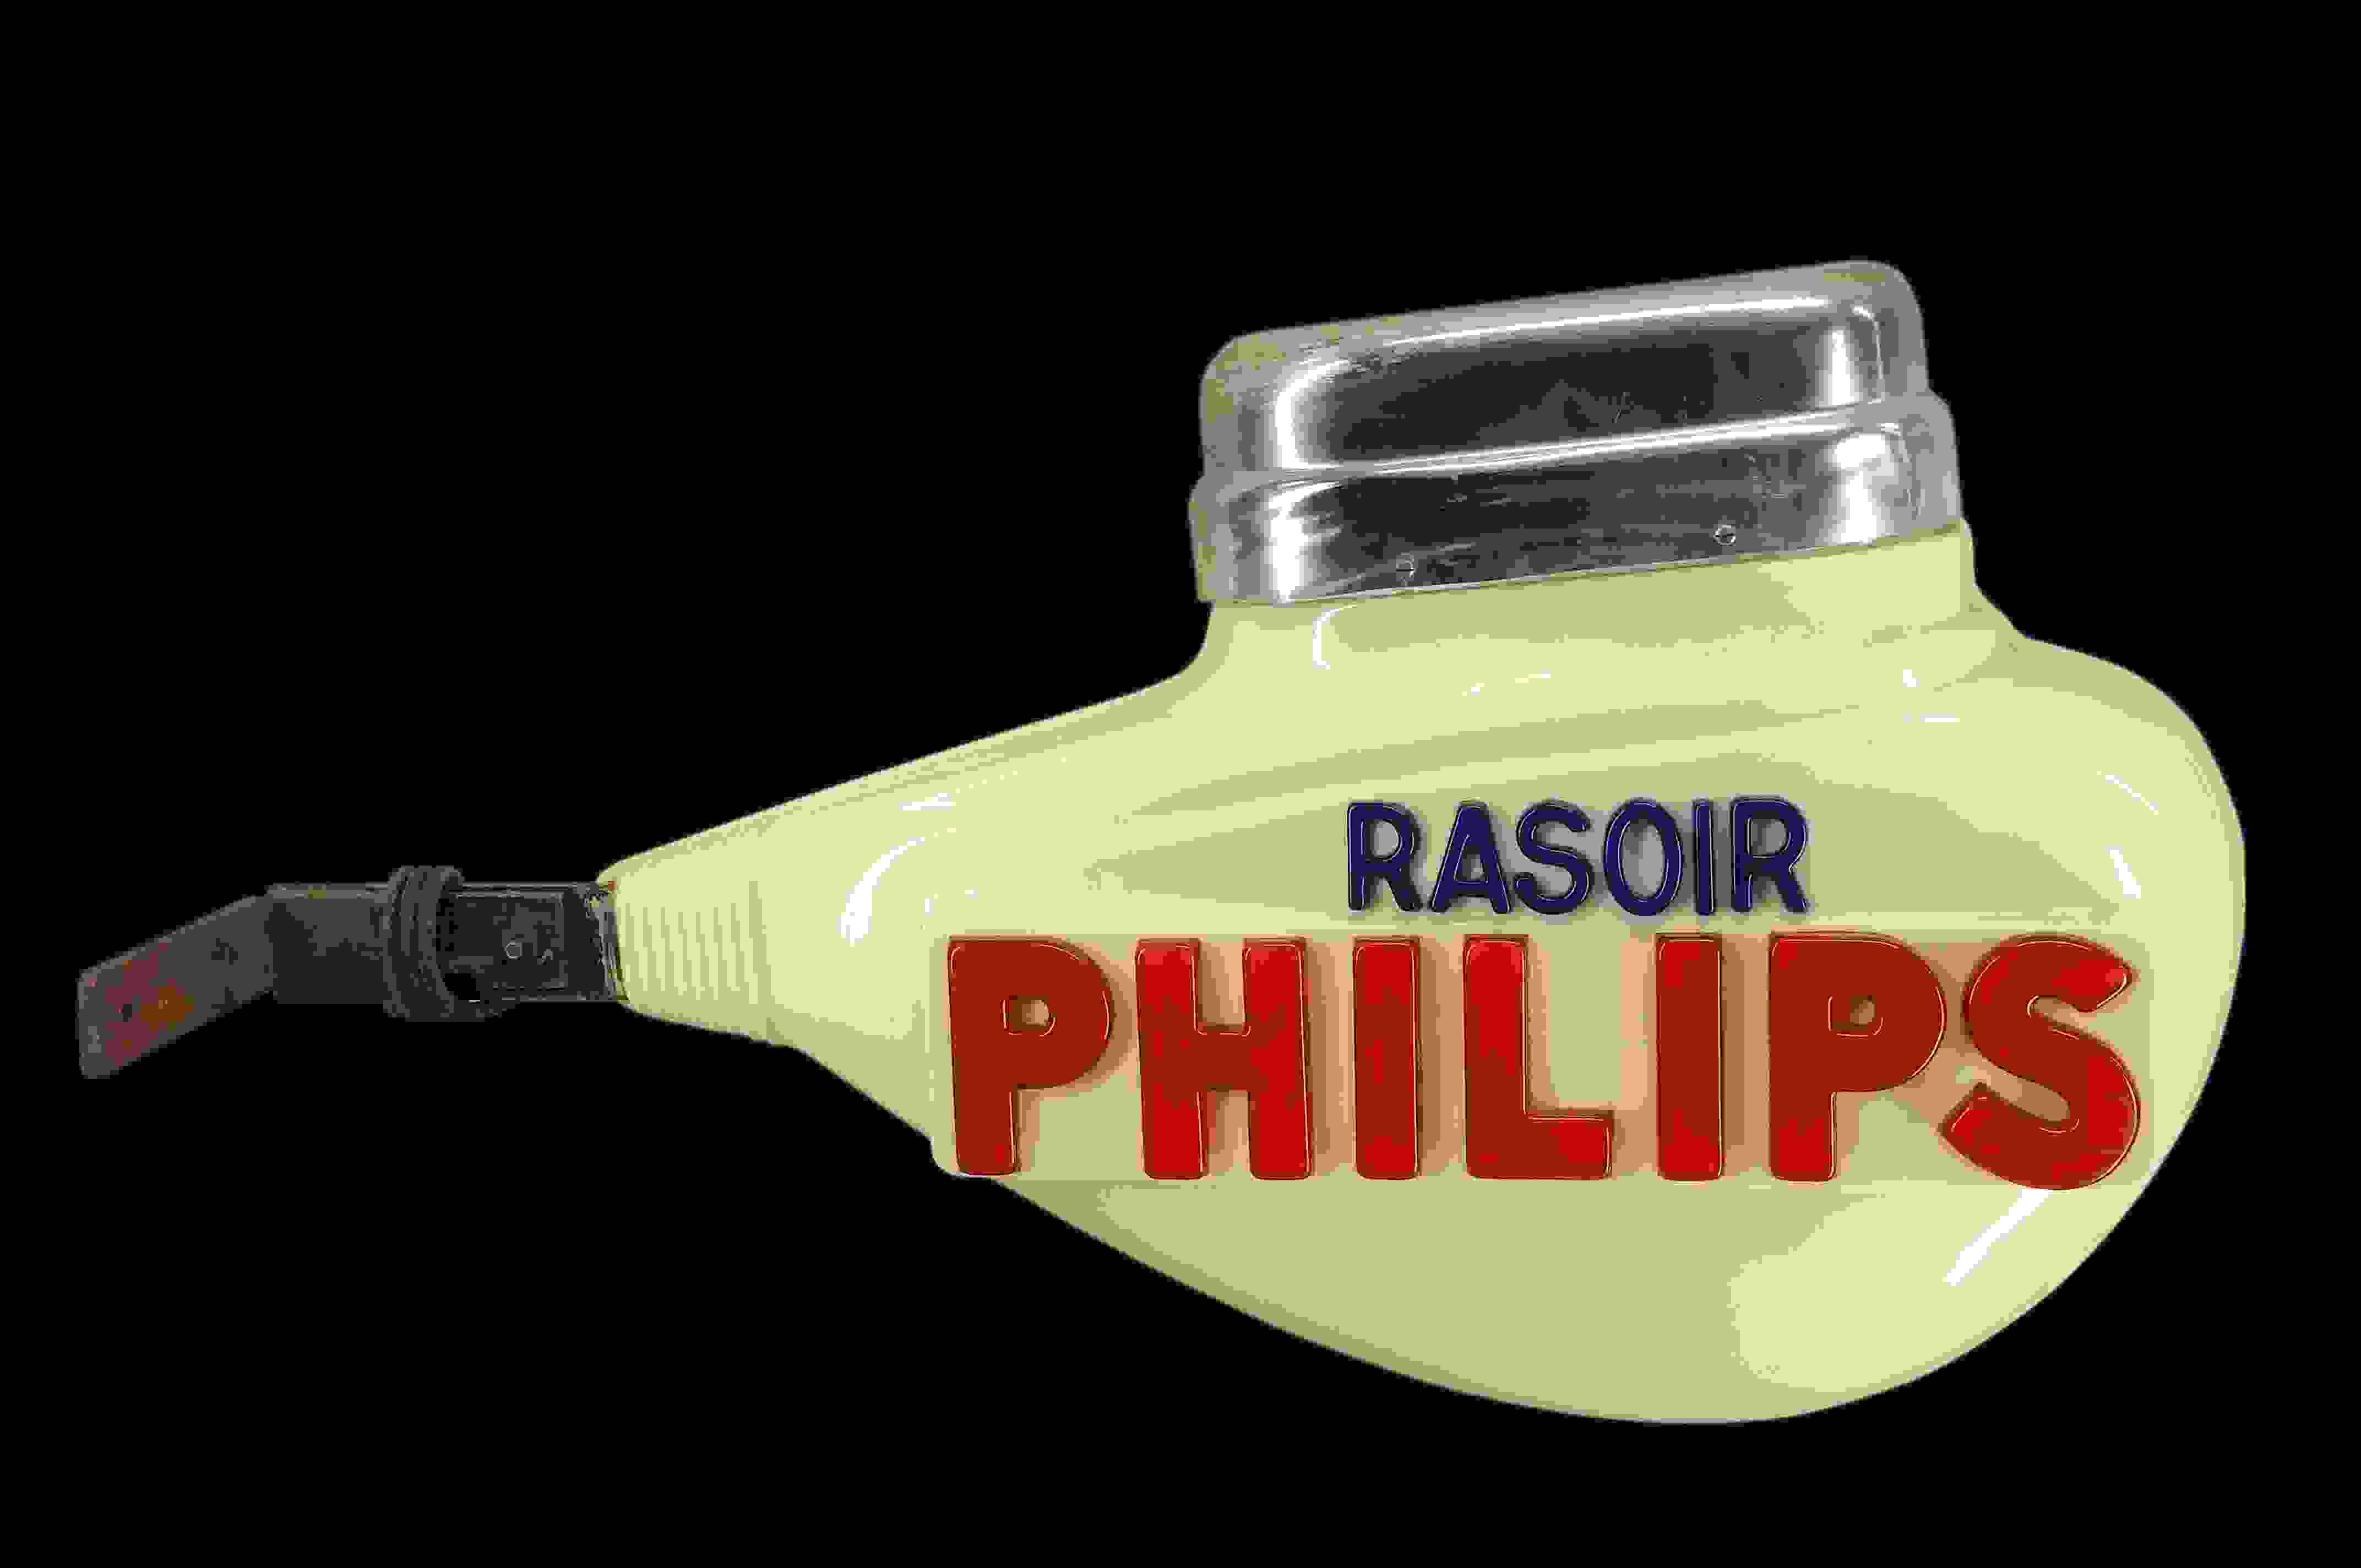 Philips Rasoir Außenleuchte 